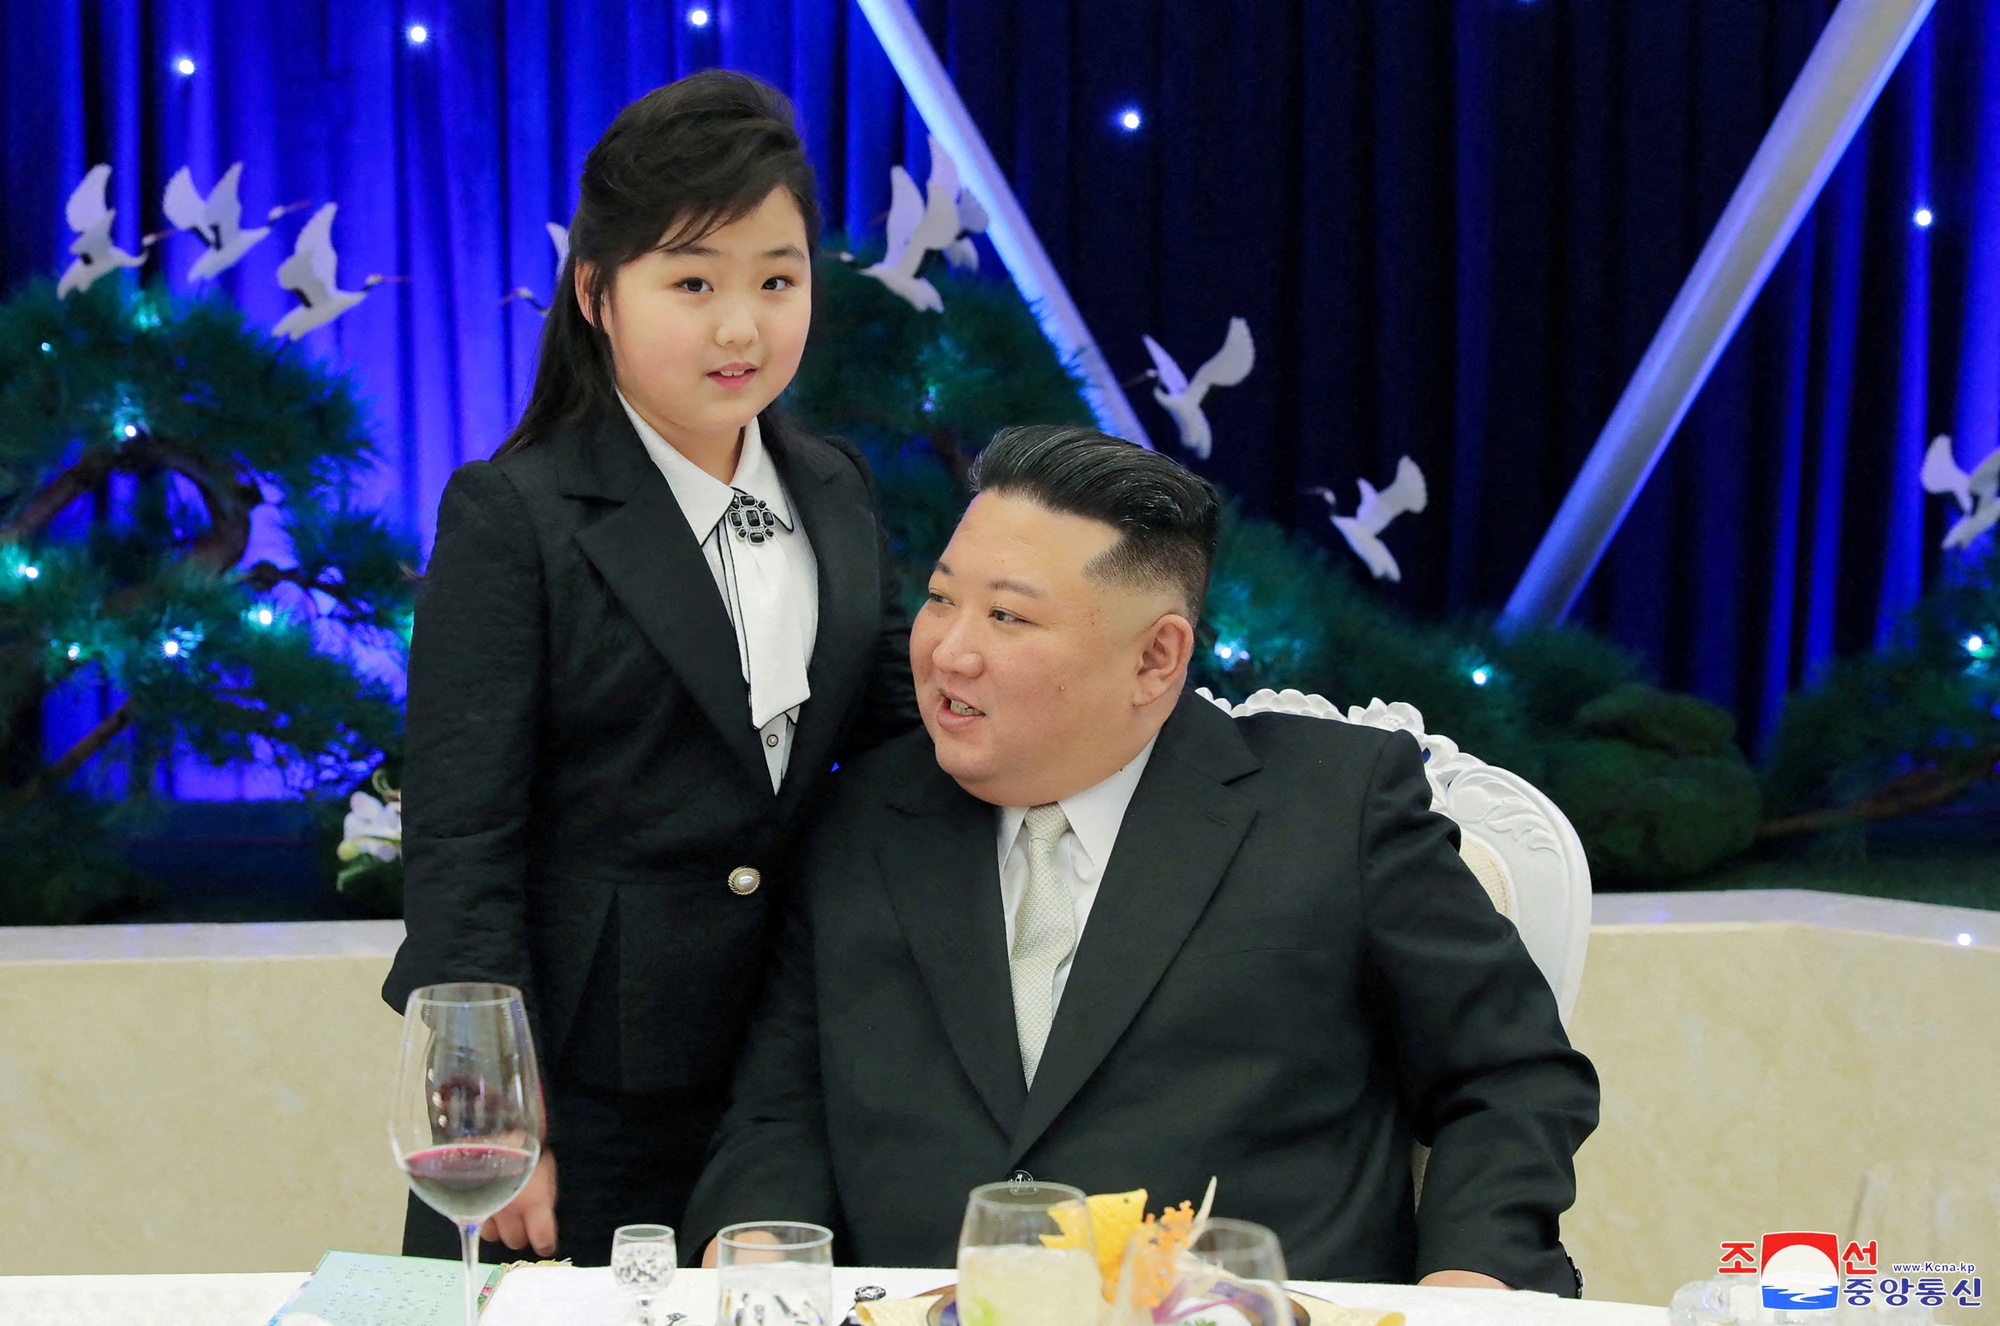 Con gái ông Kim Jong Un thành tâm điểm trong ảnh với các tướng lĩnh - Ảnh 2.